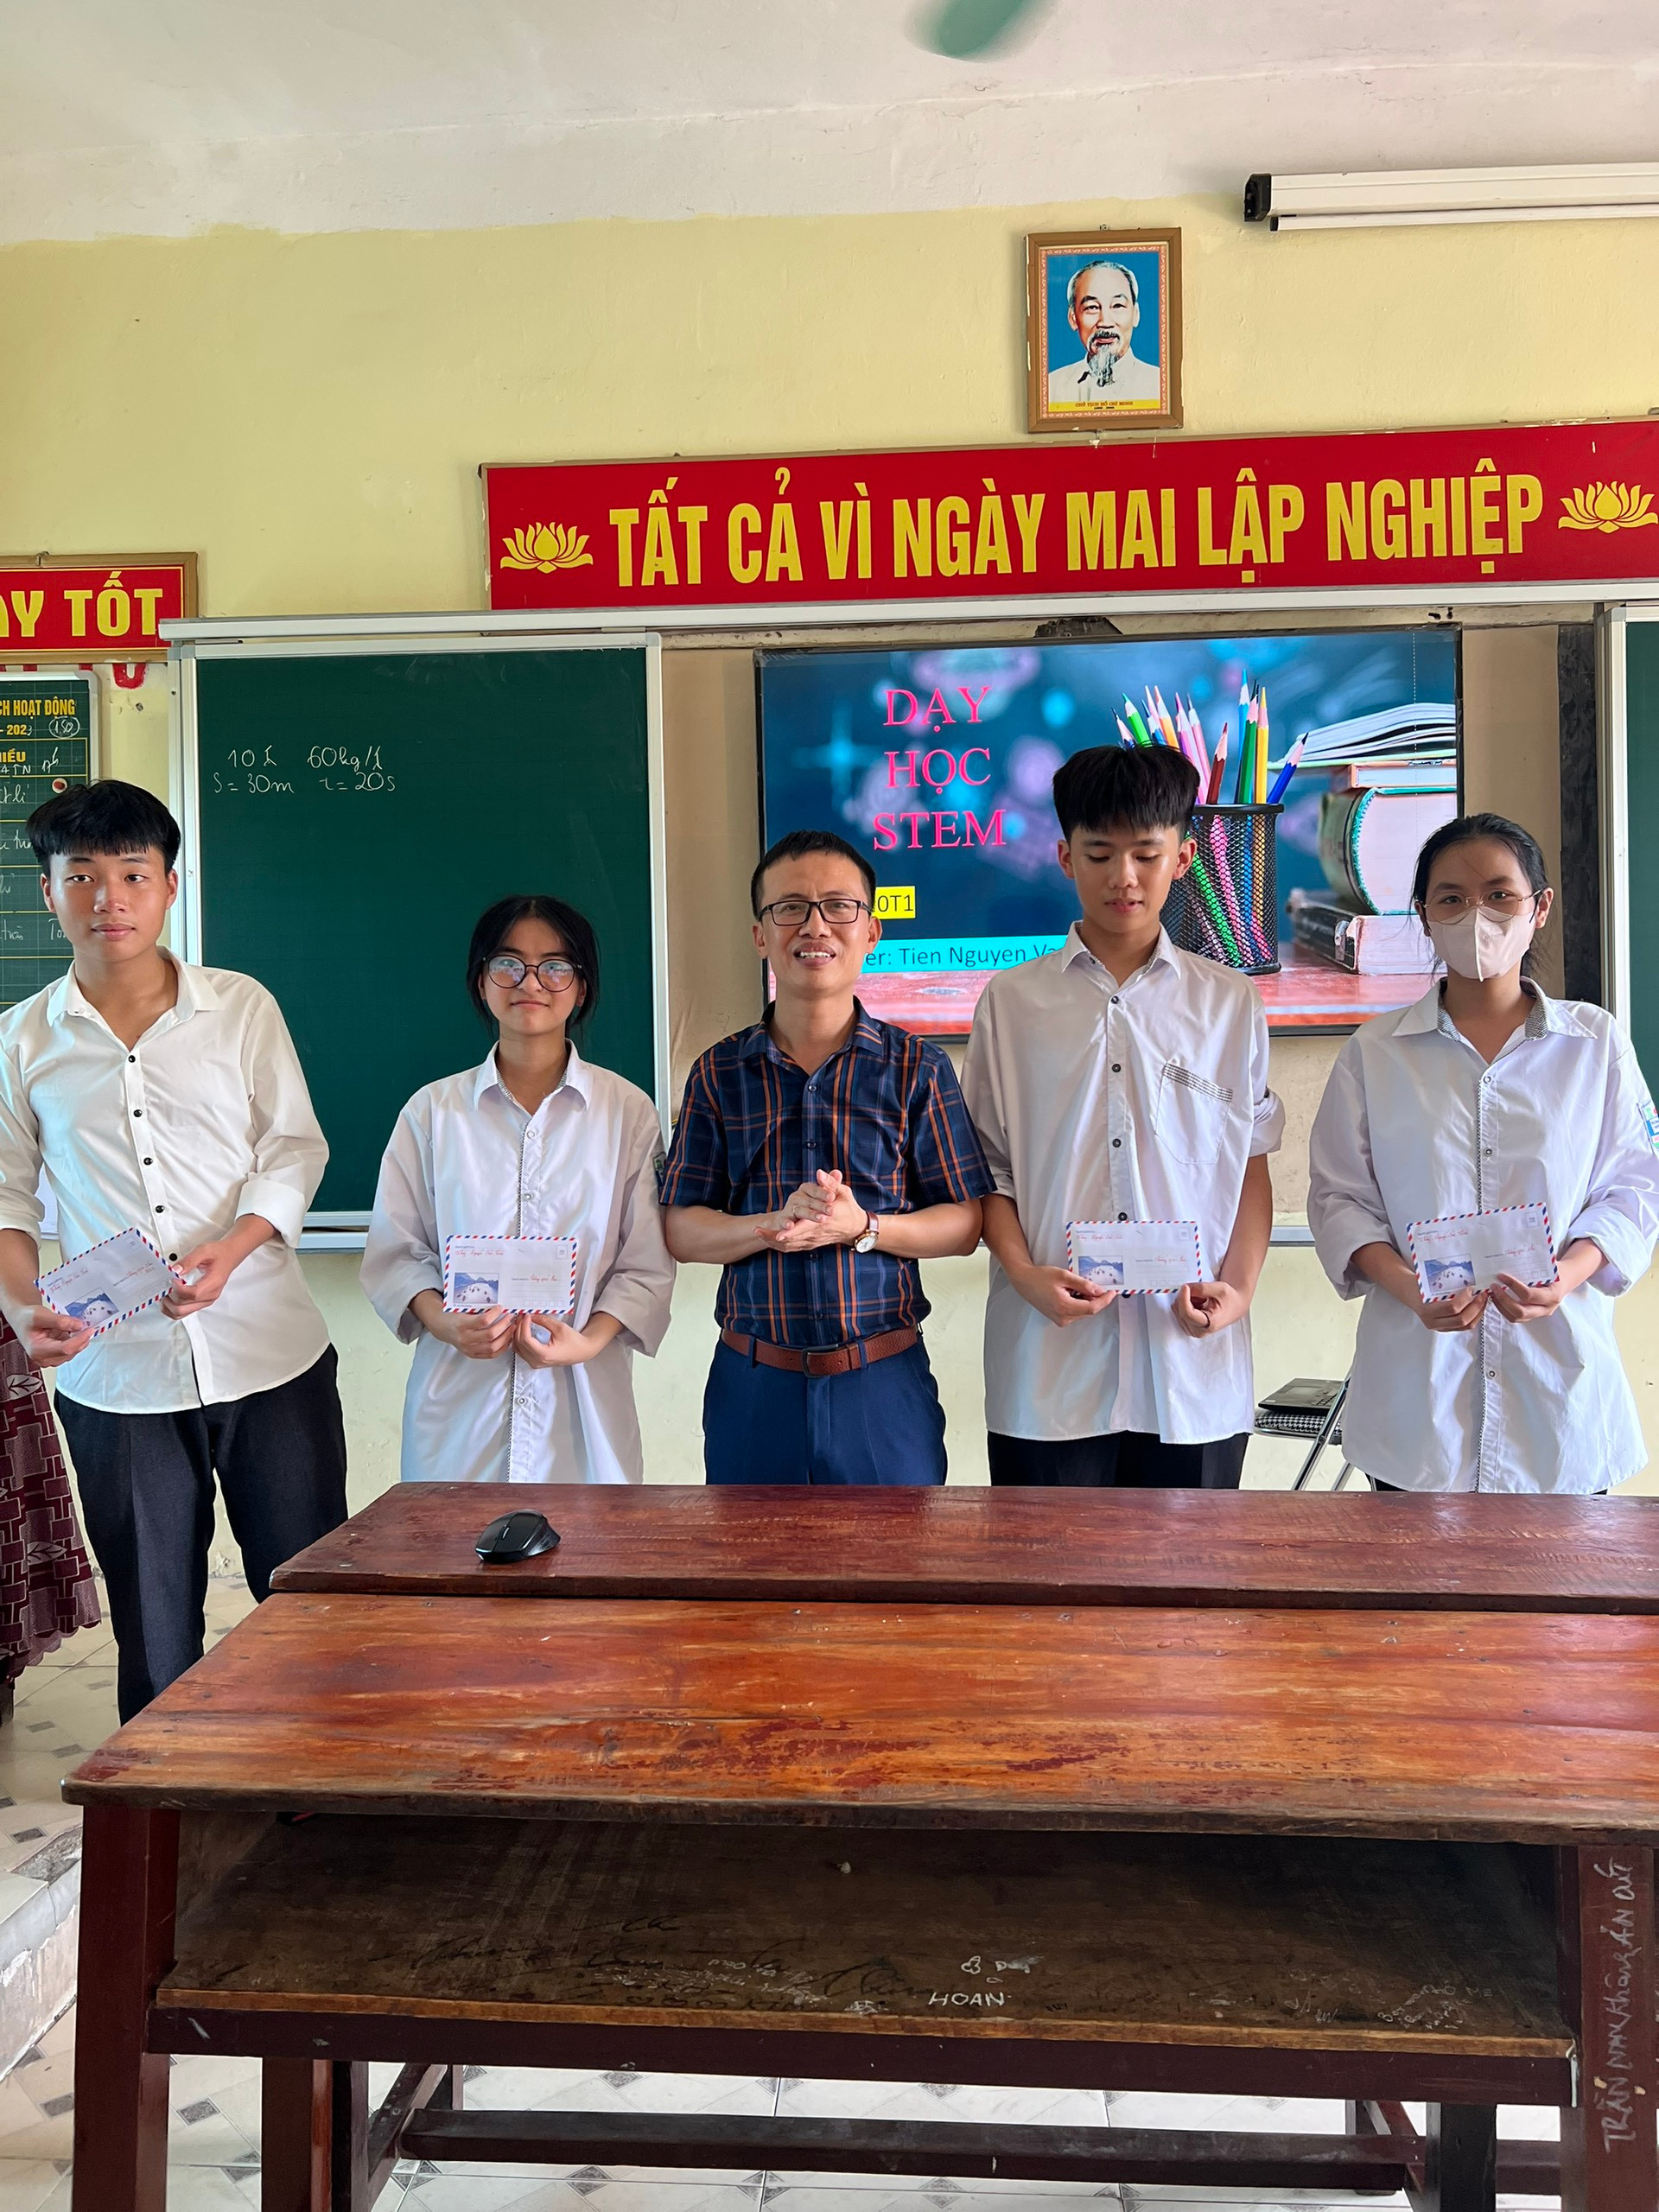 bna_Giáo viên Trường THPT Đô Lương 1 khen thưởng cho những học sinh có sản phẩm Stem xuất sắc.jpg